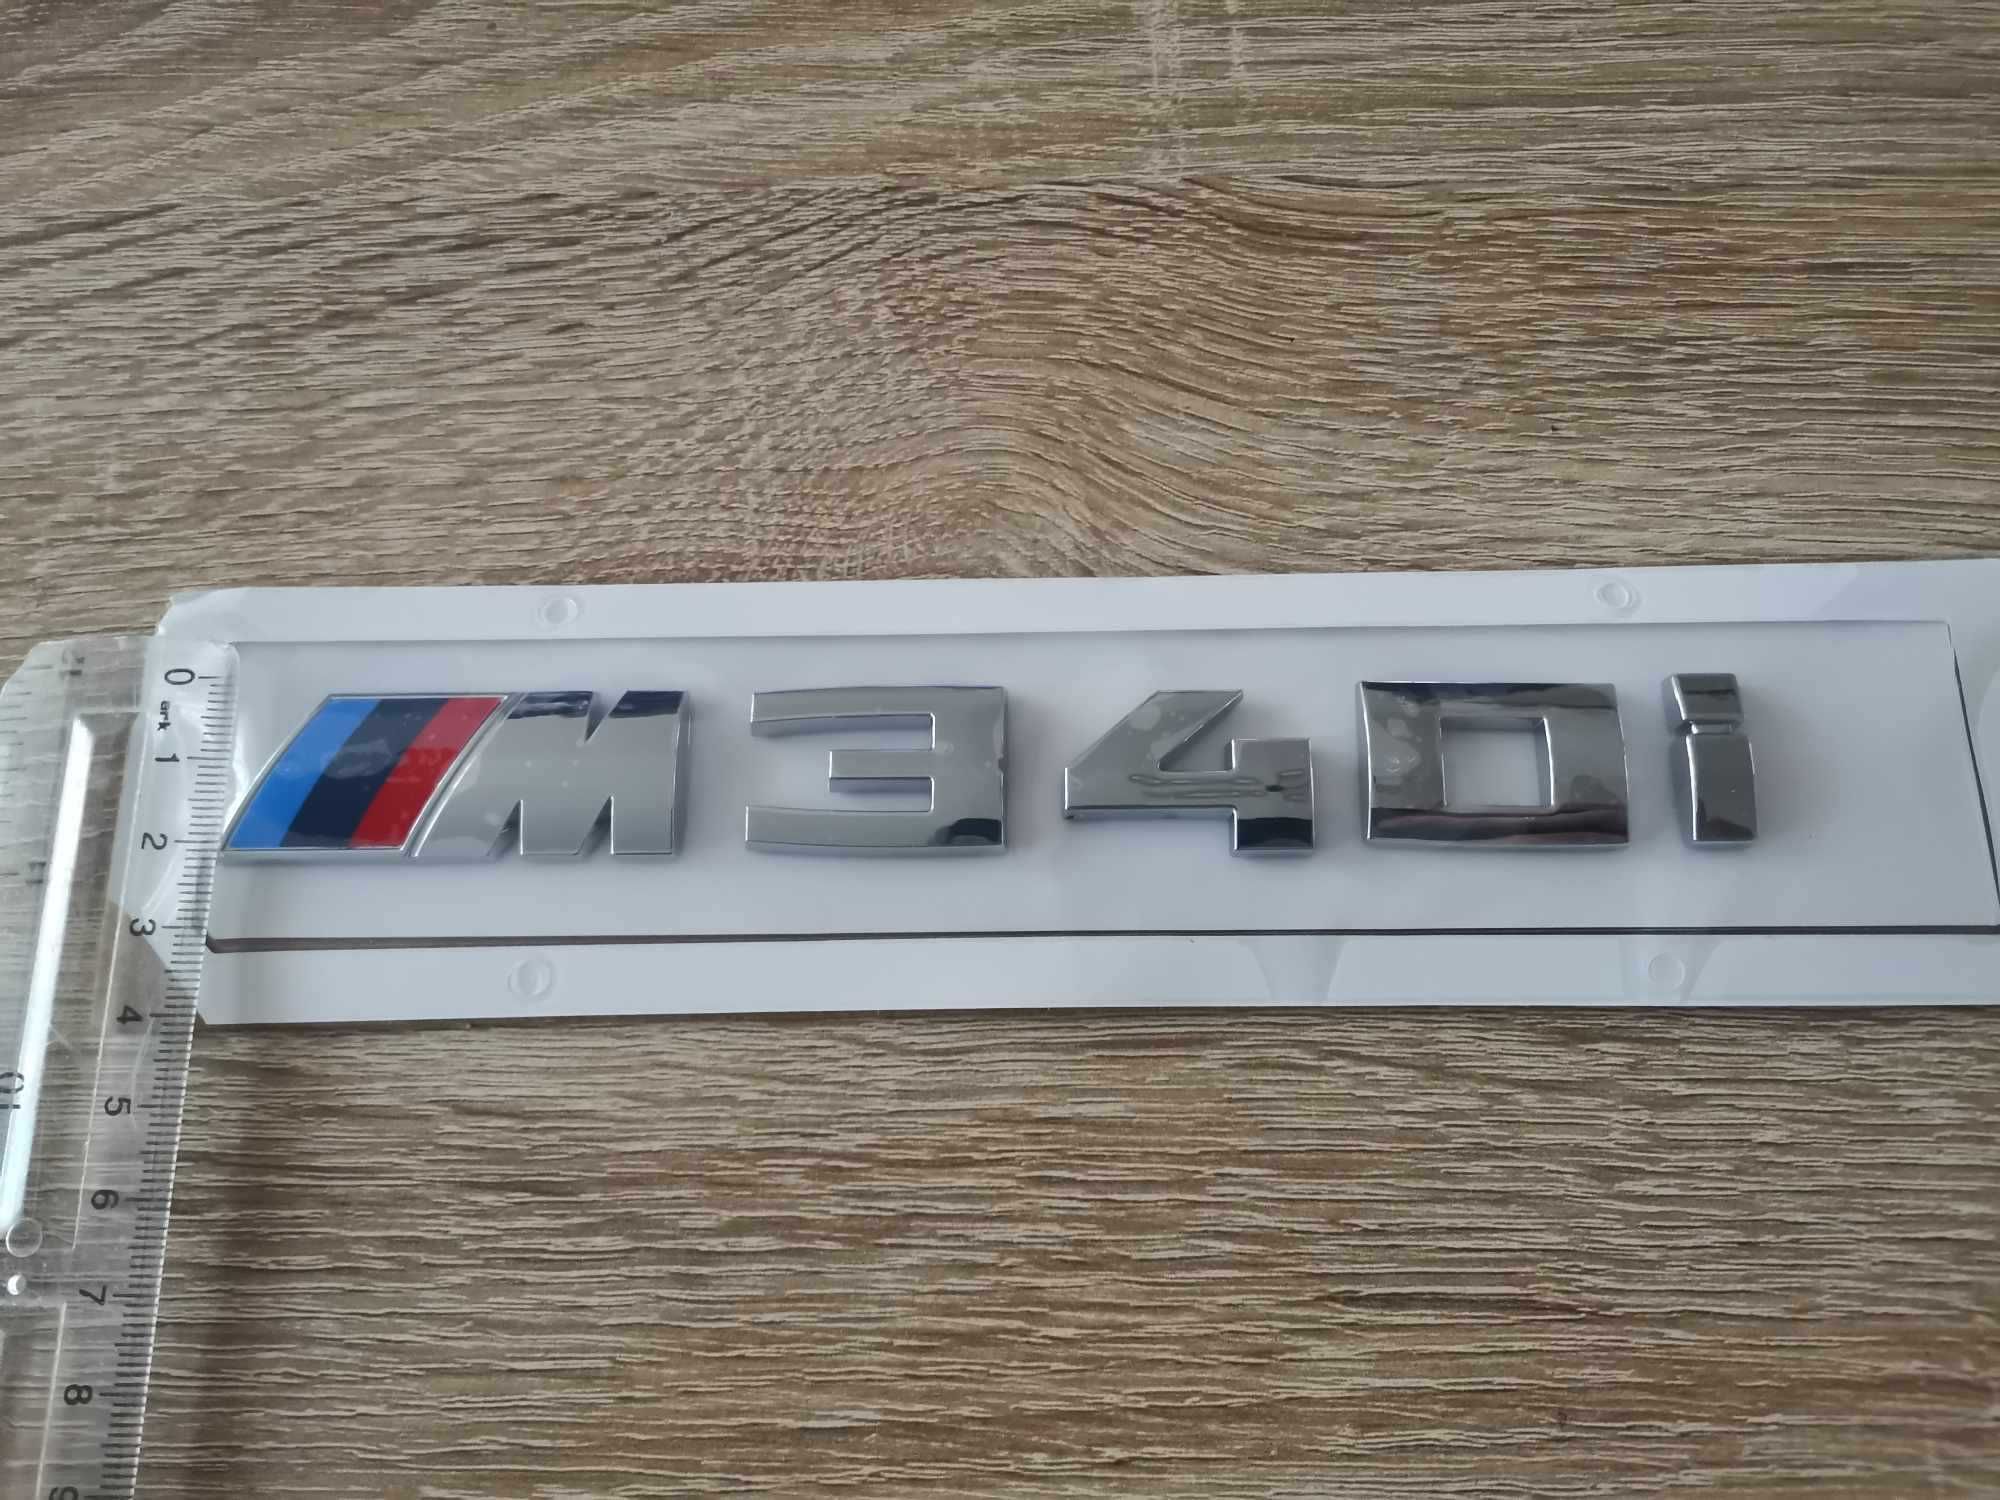 БМВ BMW М340i сребриста емблема лого